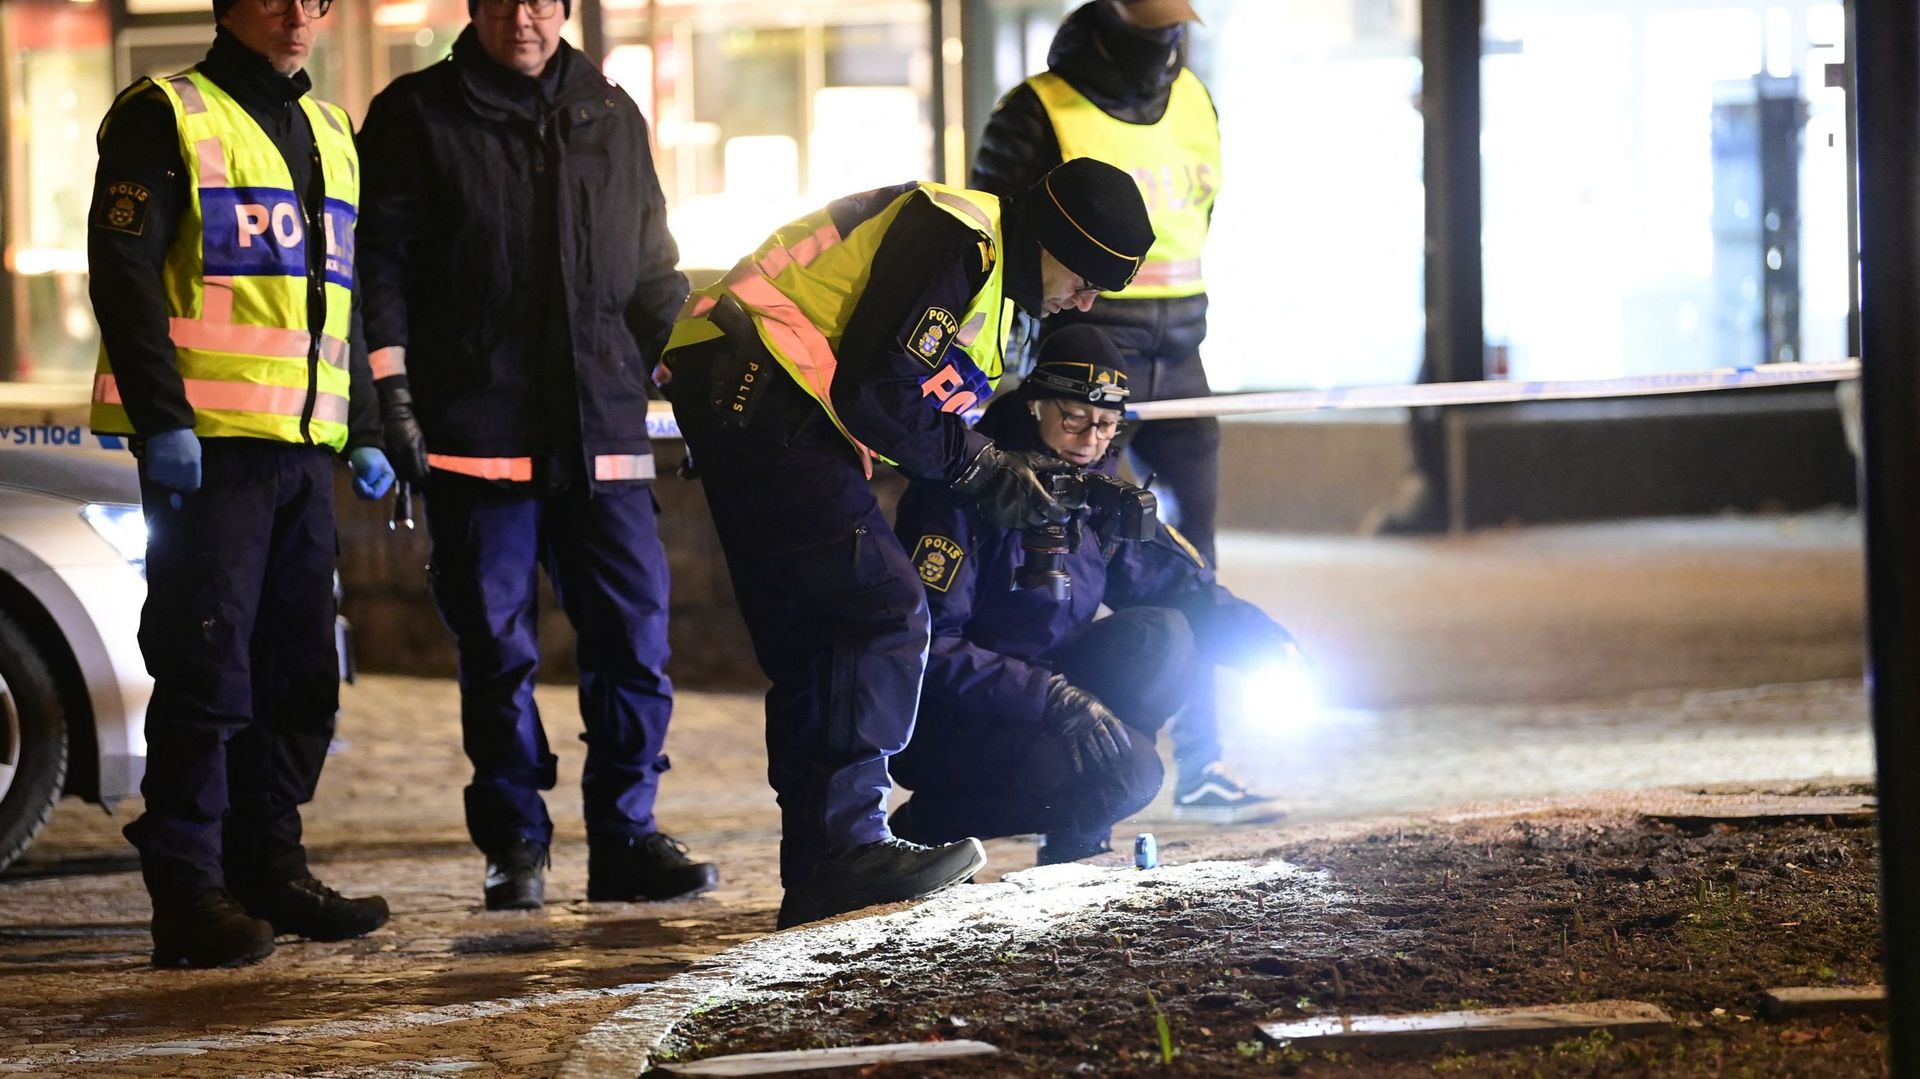 Suède : huit blessés à l’arme blanche dans une attaque "possiblement terroriste" selon la police